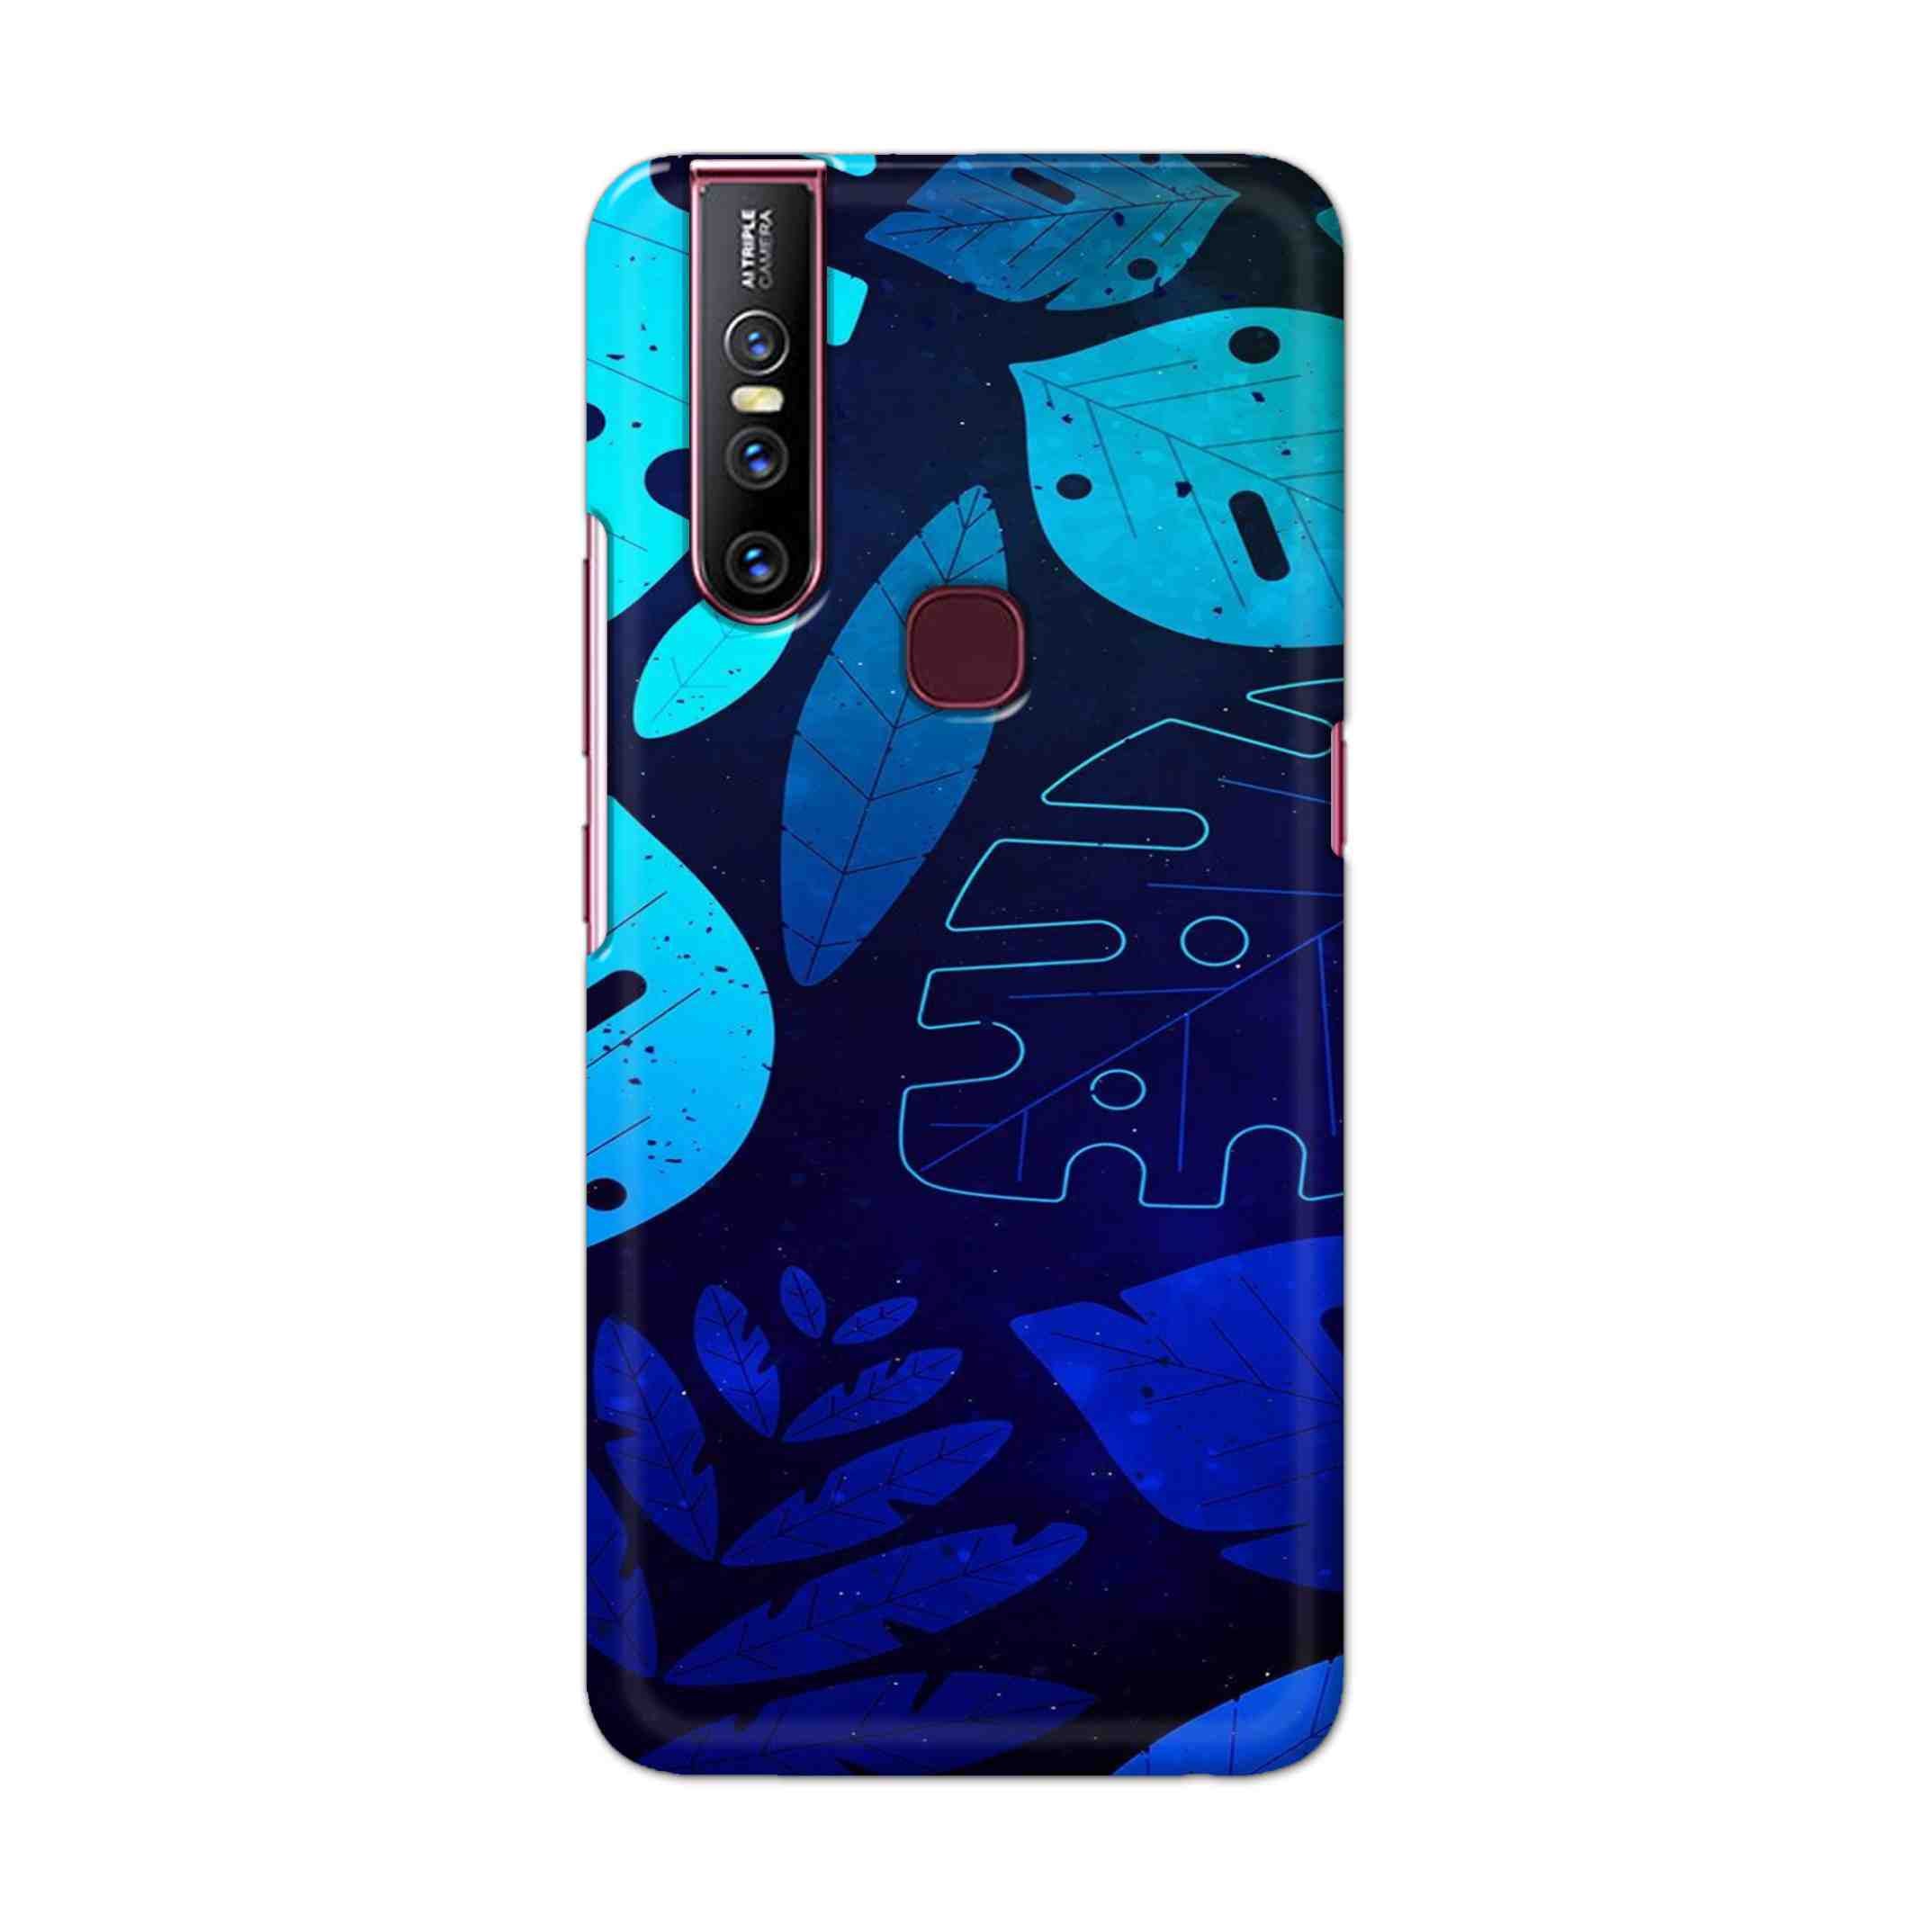 Buy Neon Leaf Hard Back Mobile Phone Case Cover For Vivo V15 Online